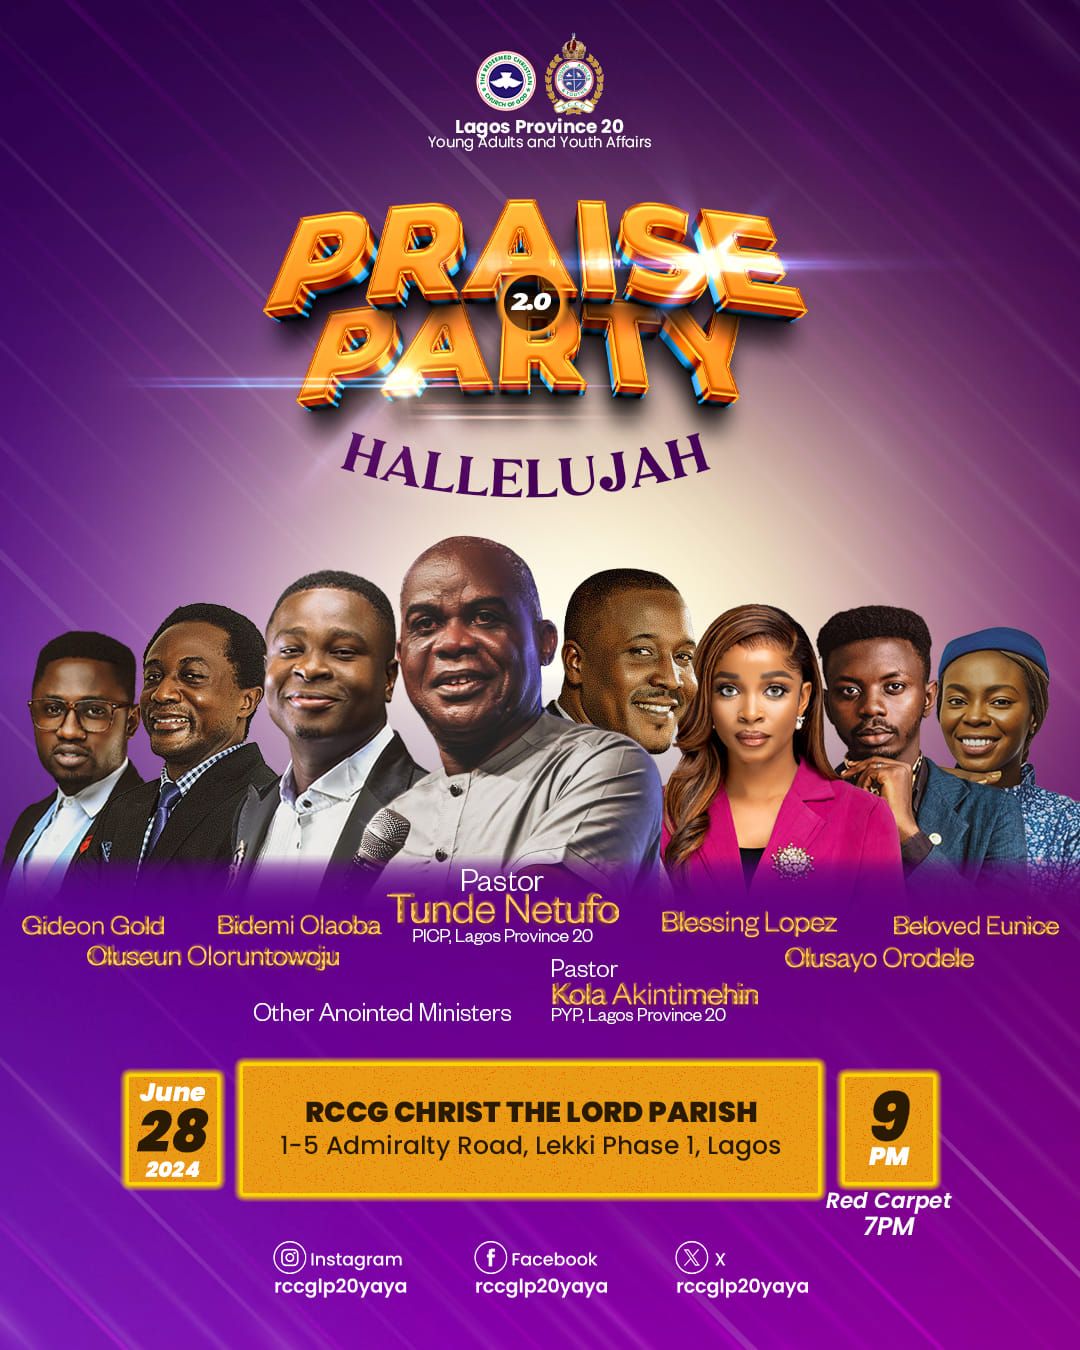 Praise Party 2.0 - HALLELUJAH 